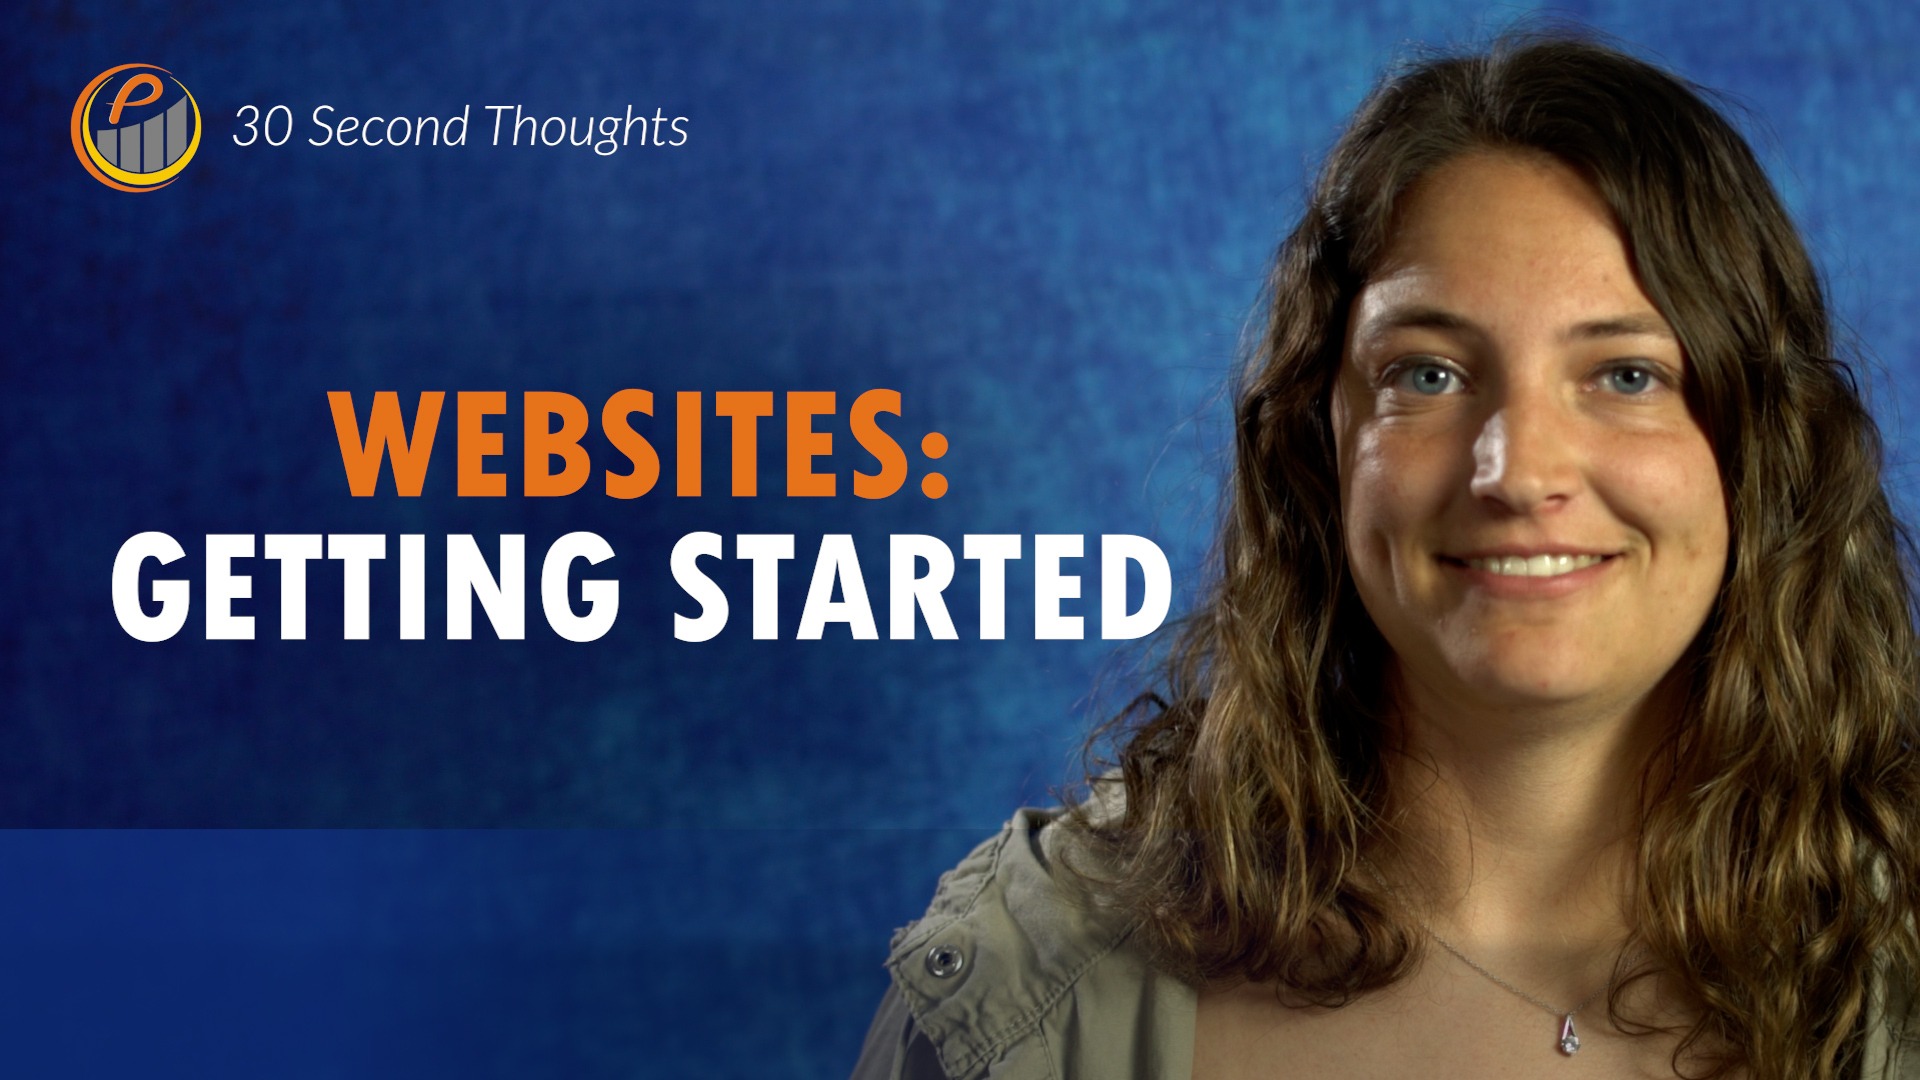 Websites: Getting Started